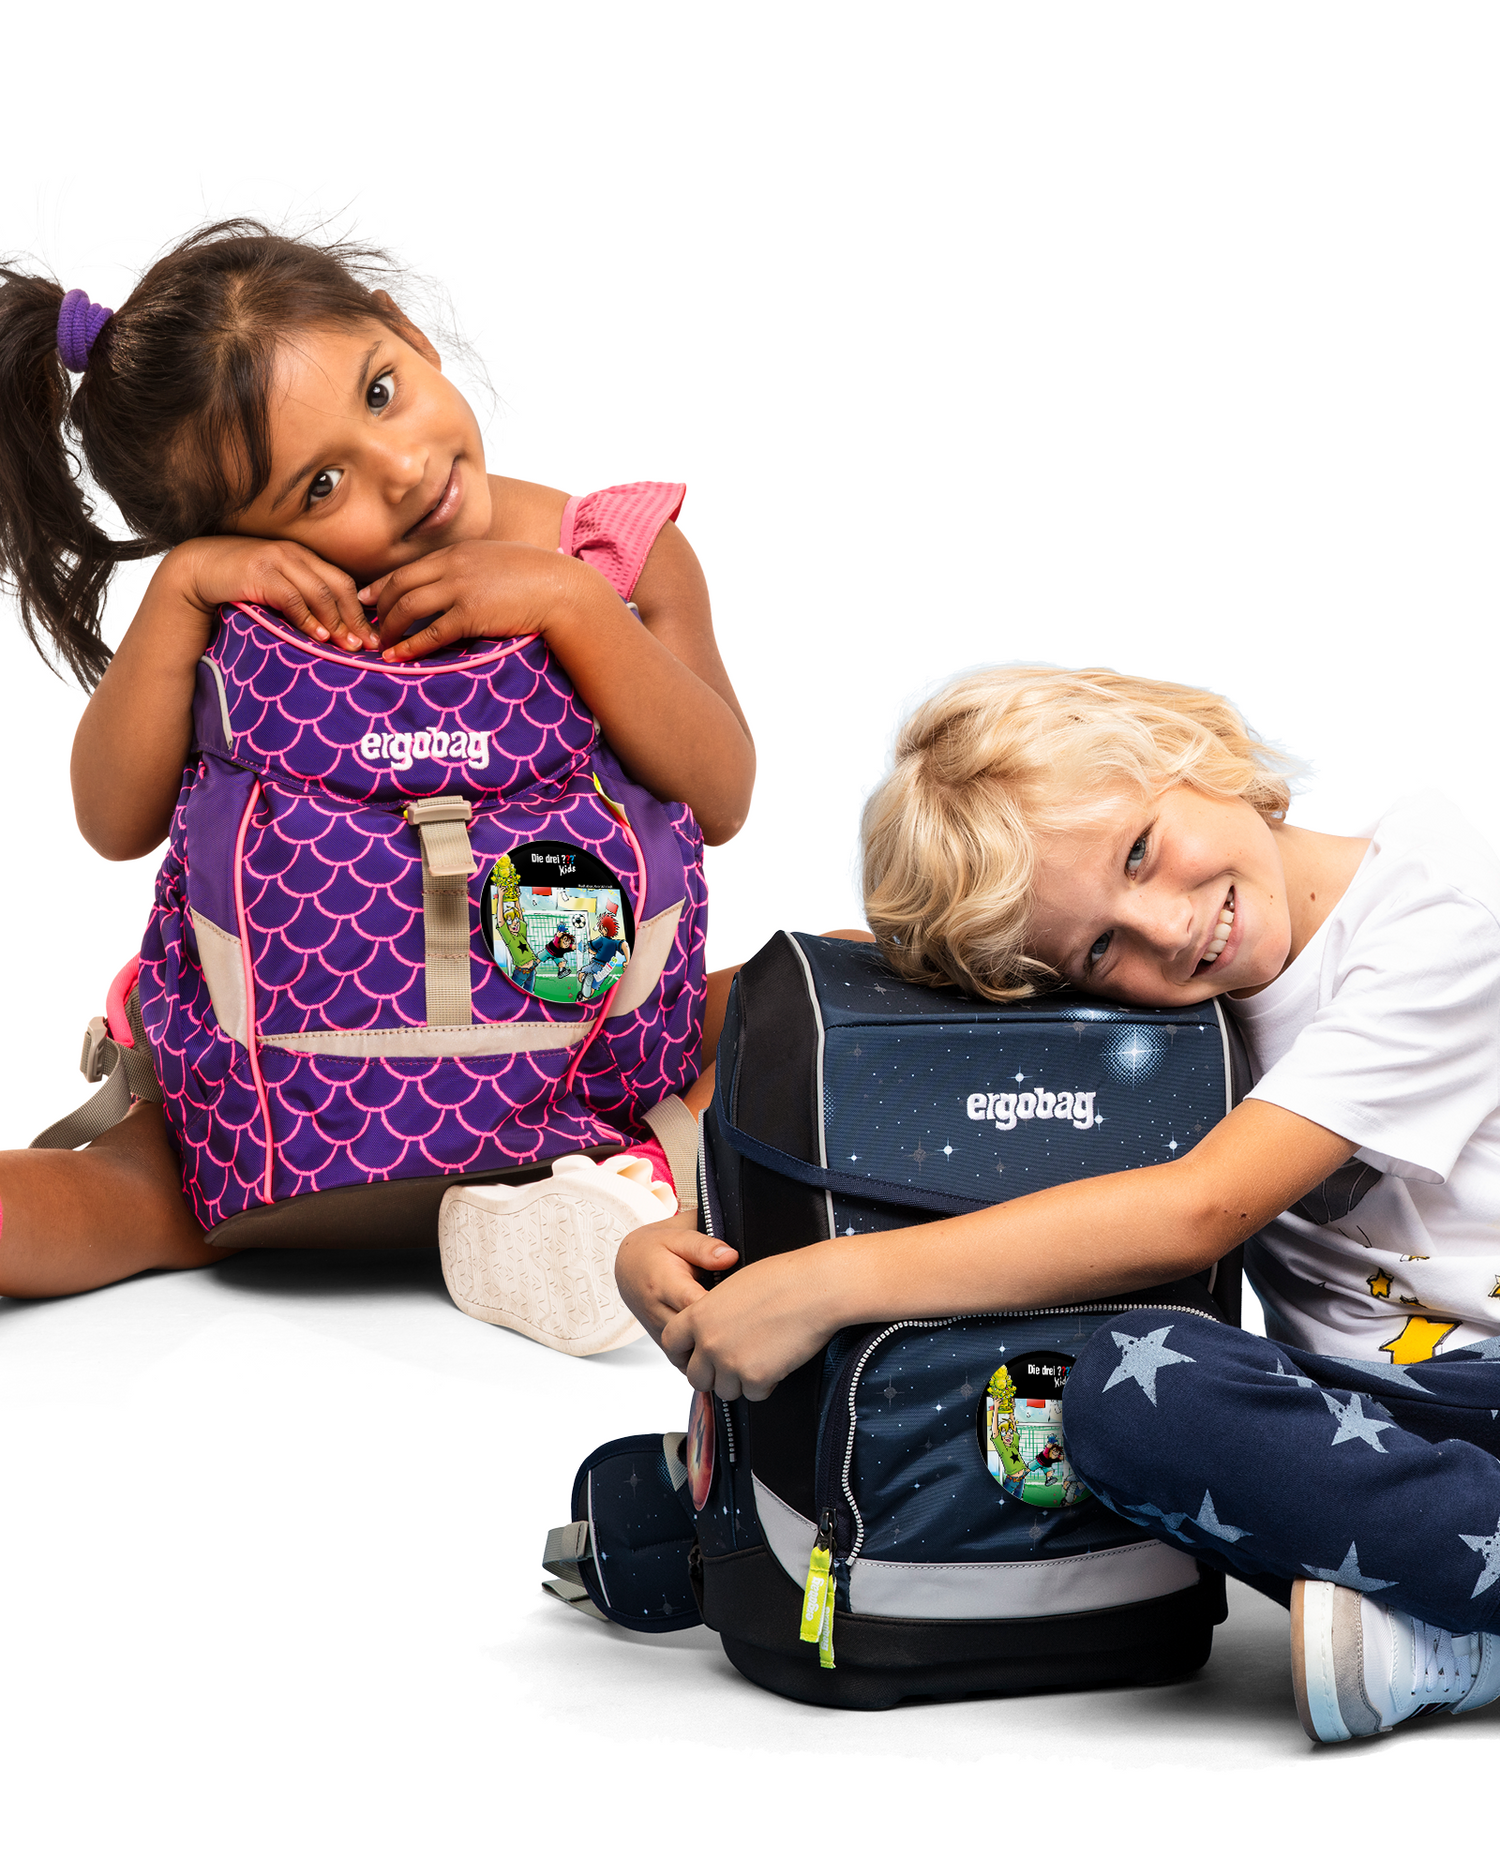 Die Drei Fragezeichen Spiel Klettie: Attached to childrens ergobag backpack